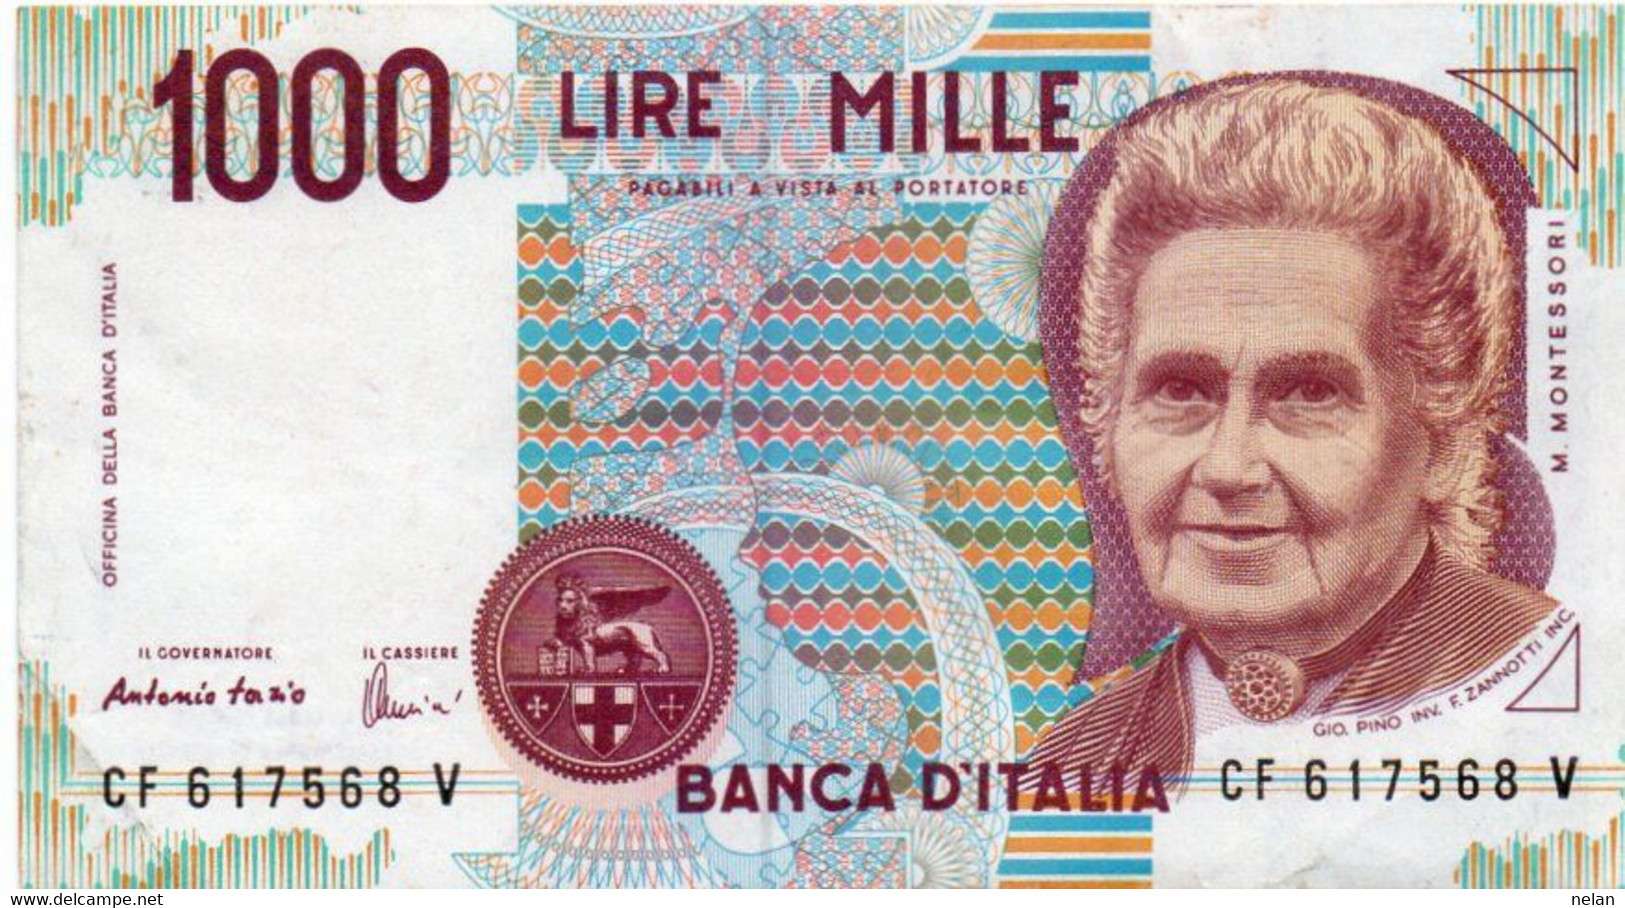 ITALIA  1000 LIRE - 1994 -MONTESSORI -  P-114  Circ. Xf - Firme: Antonio Fazio = Angelo Amici - 1000 Lire